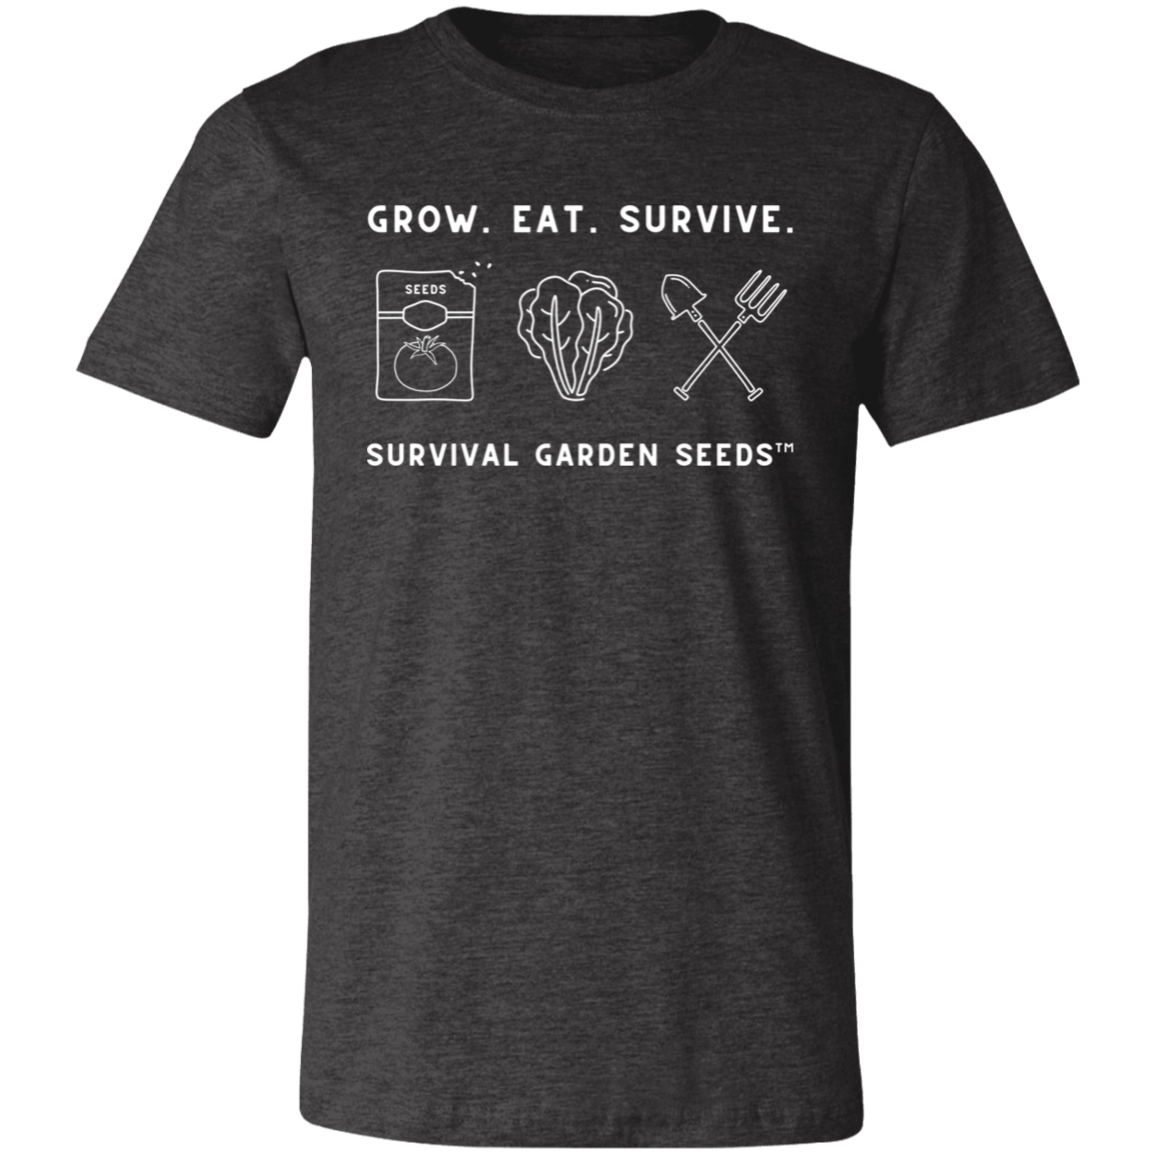 Short-Sleeve T-Shirt - Grow. Eat. Survive.